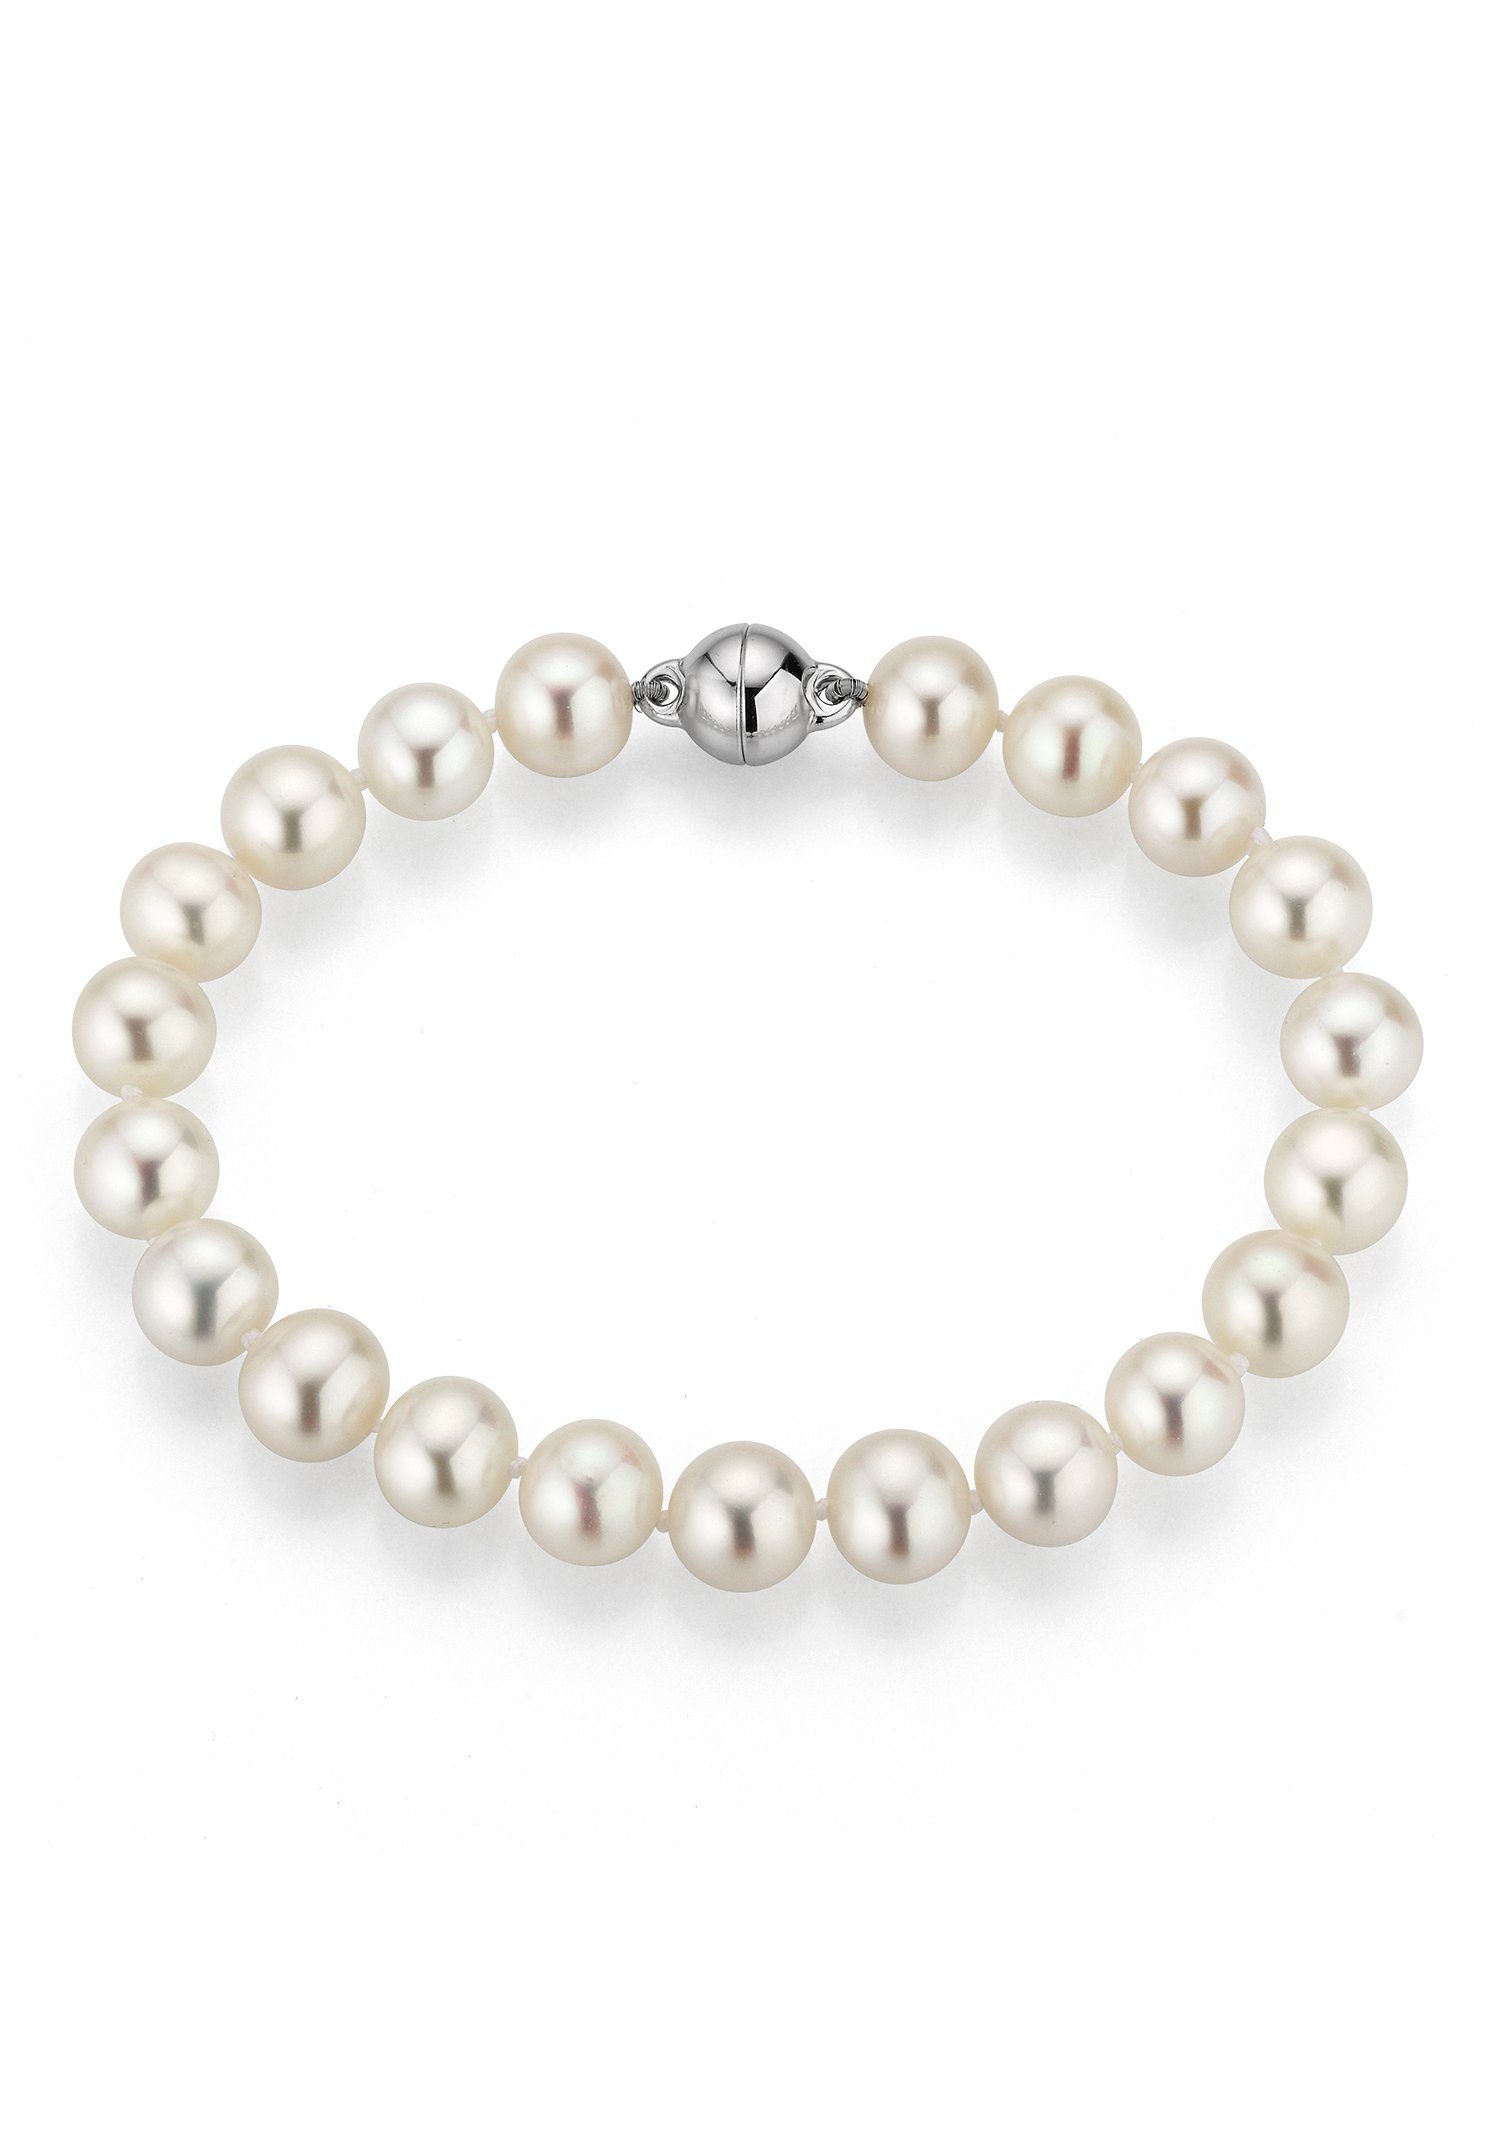 Firetti Perlenarmband Schmuck Geschenk Armschmuck Armkette Perle, Made in Germany - mit Süßwasserzuchtperle